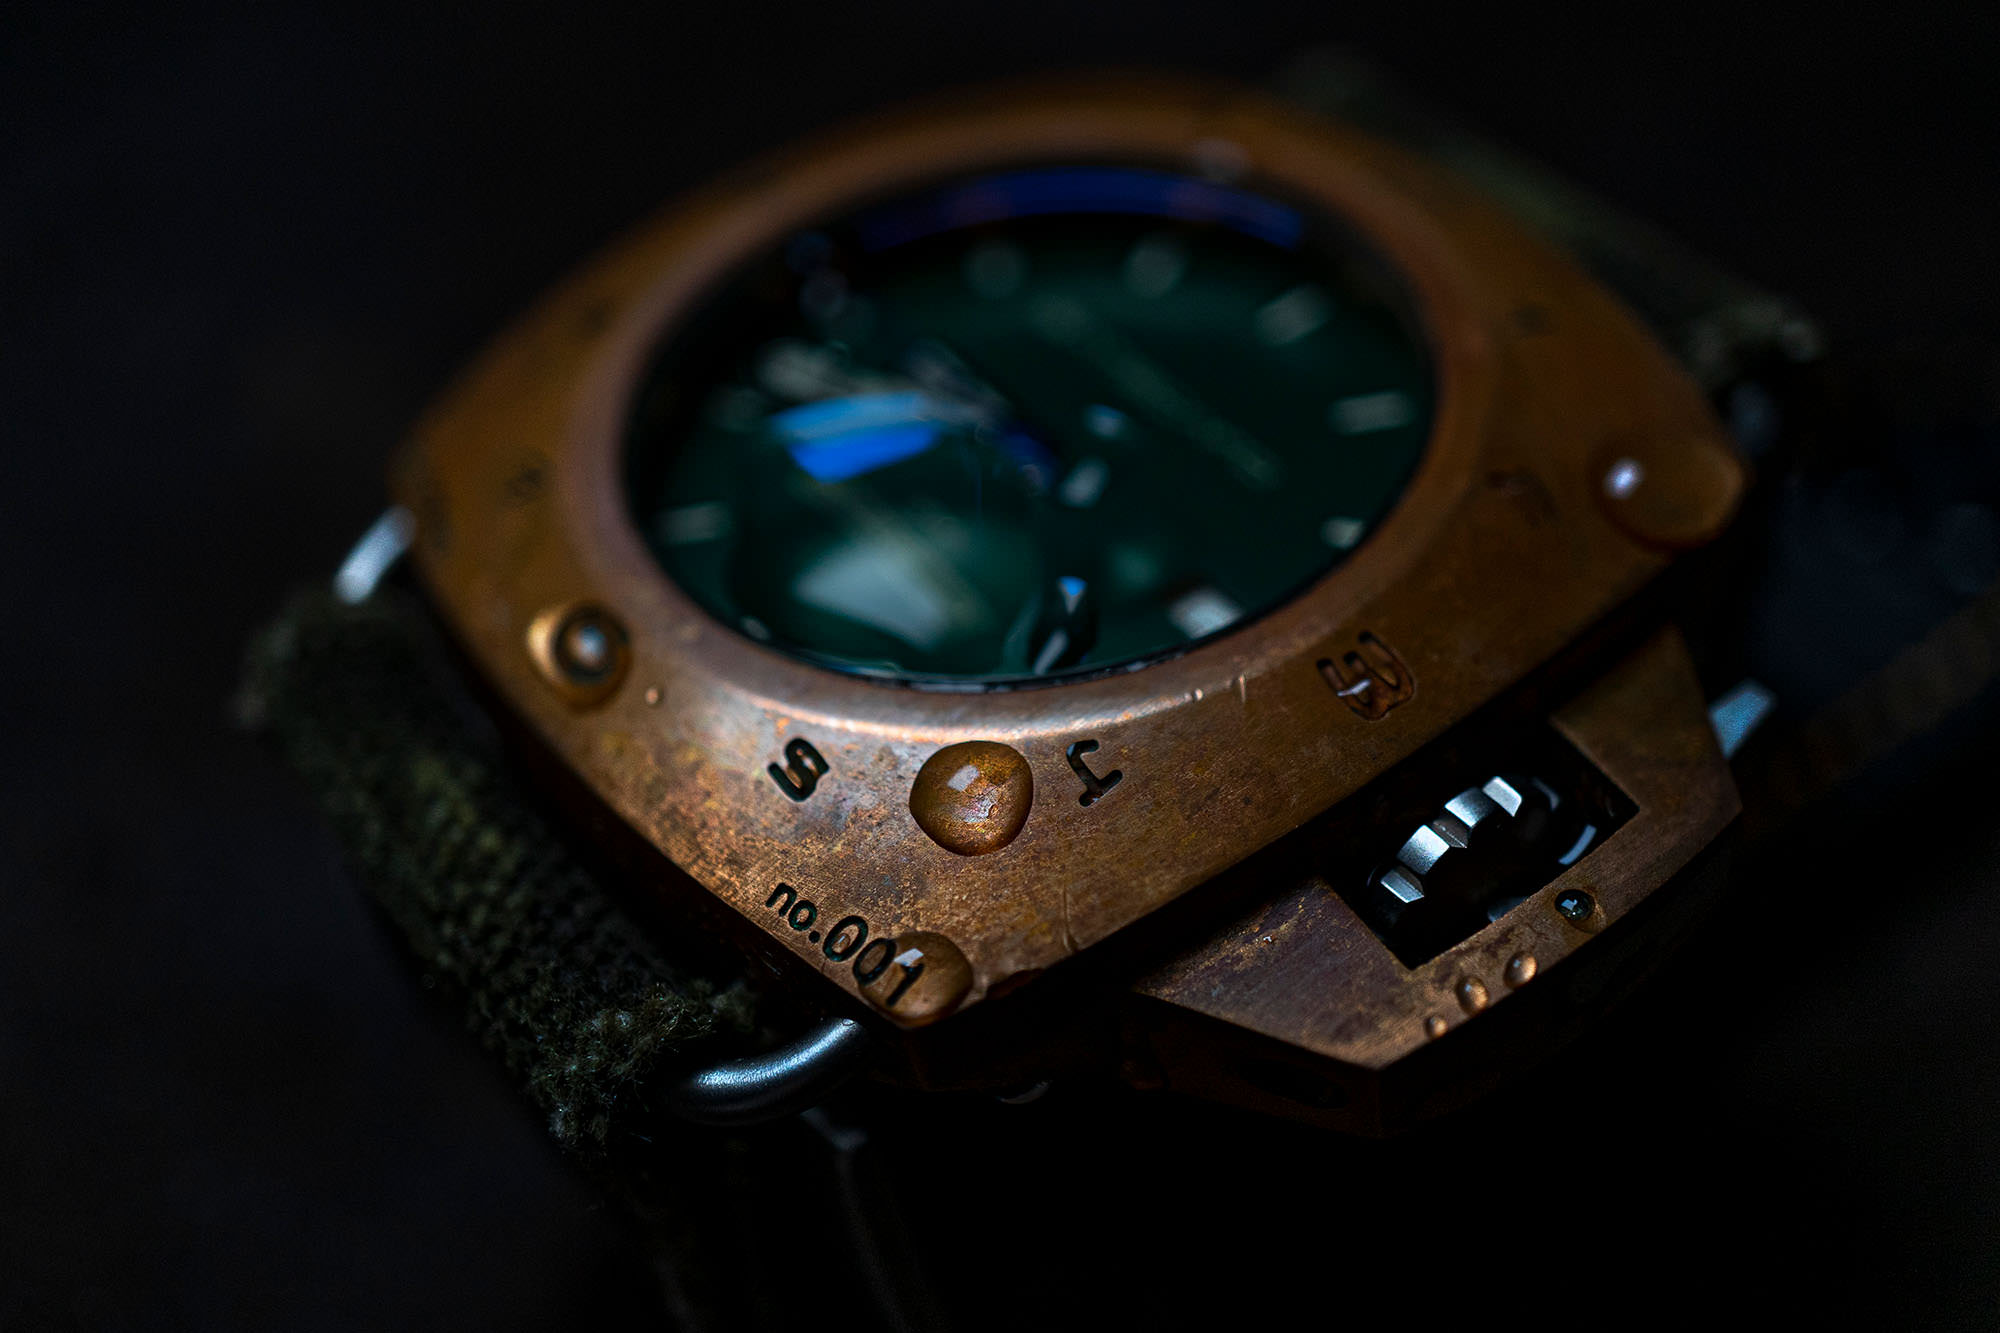 BATISCAFO Zero45 Prototype Release - - Batiscafo Watches